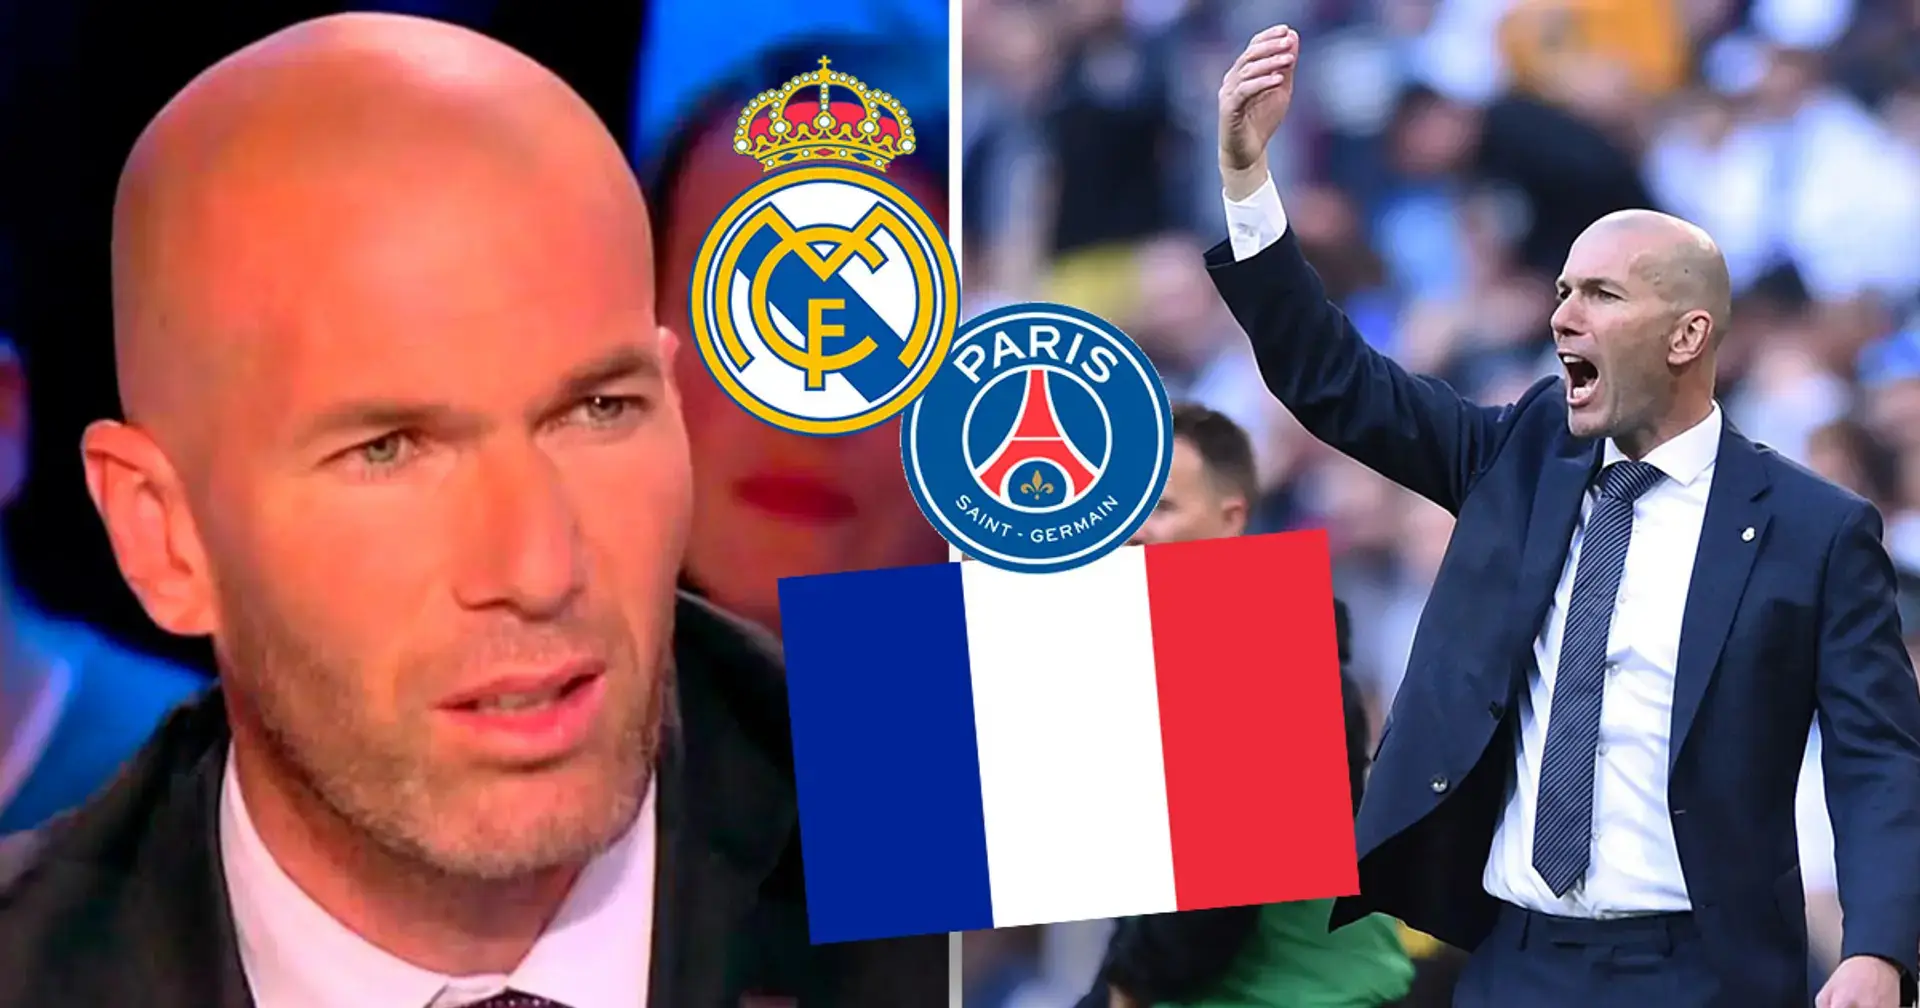 'Volveré pronto': Zinedine Zidane lanza una cacería masiva sobre su futuro como entrenador 